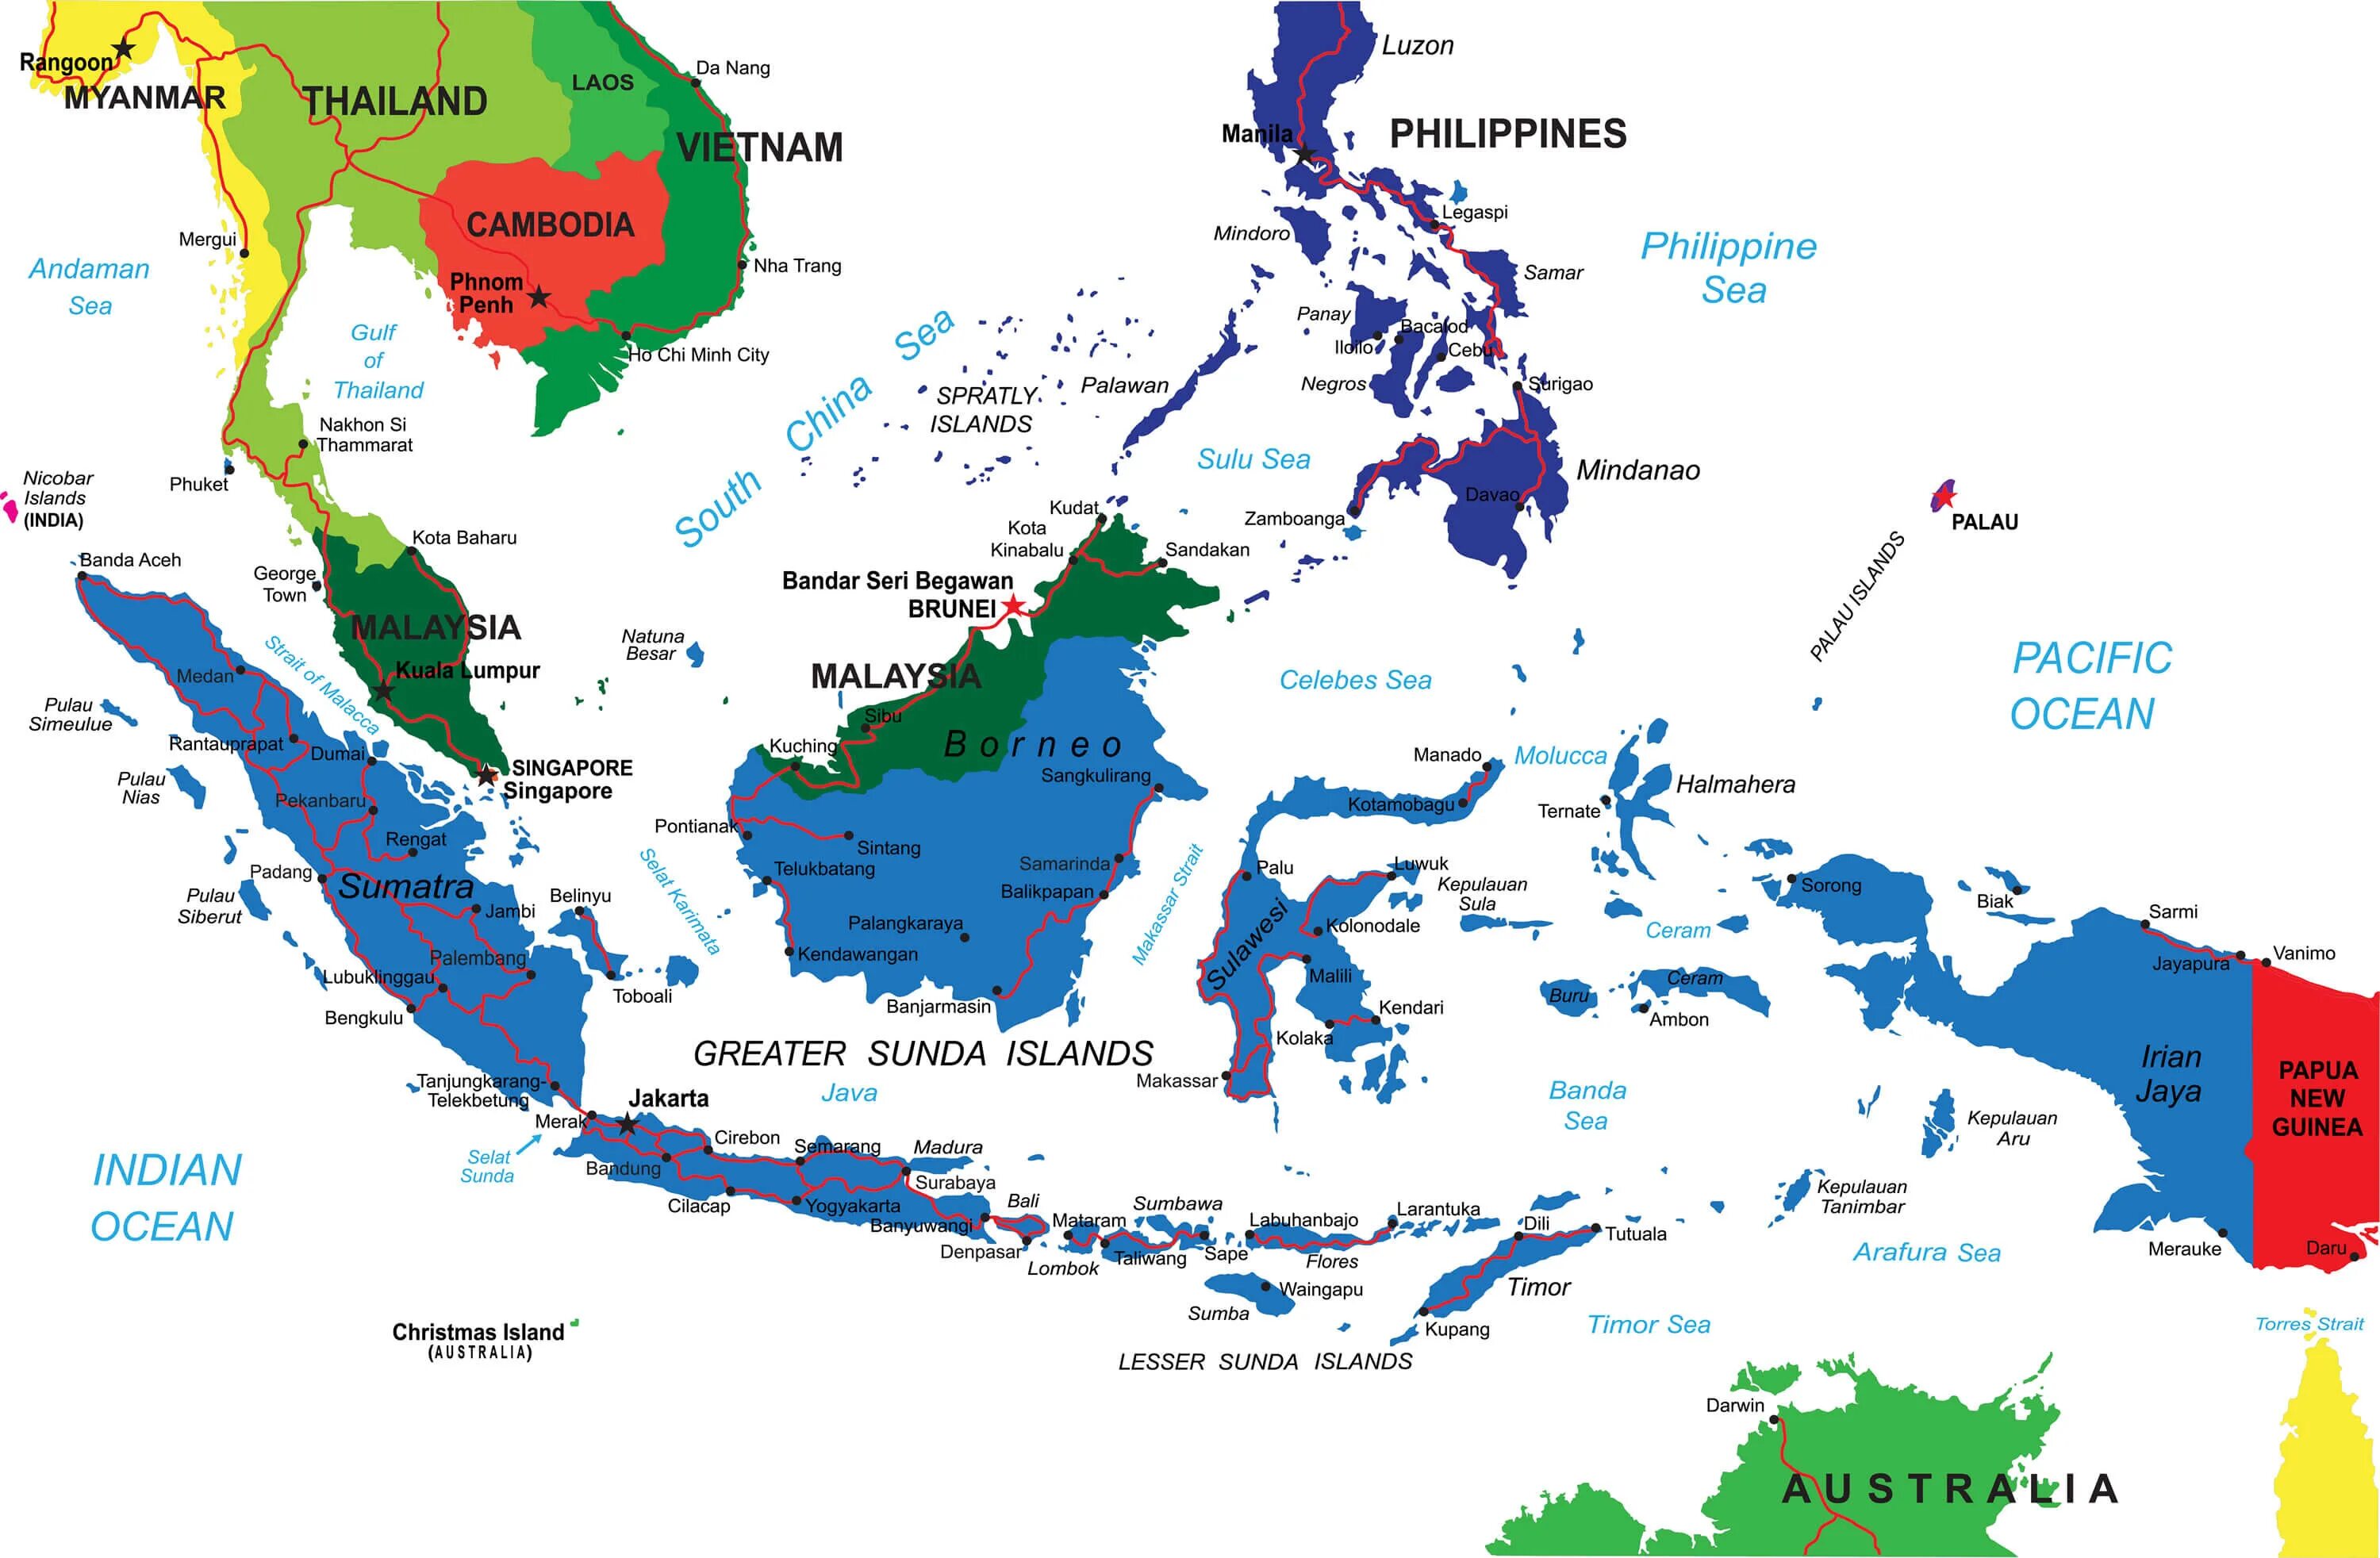 Большие малые Зондские и Филиппинские острова на карте. Большие и малые Зондские острова на карте Евразии. Архипелаг большие Зондские острова на карте.